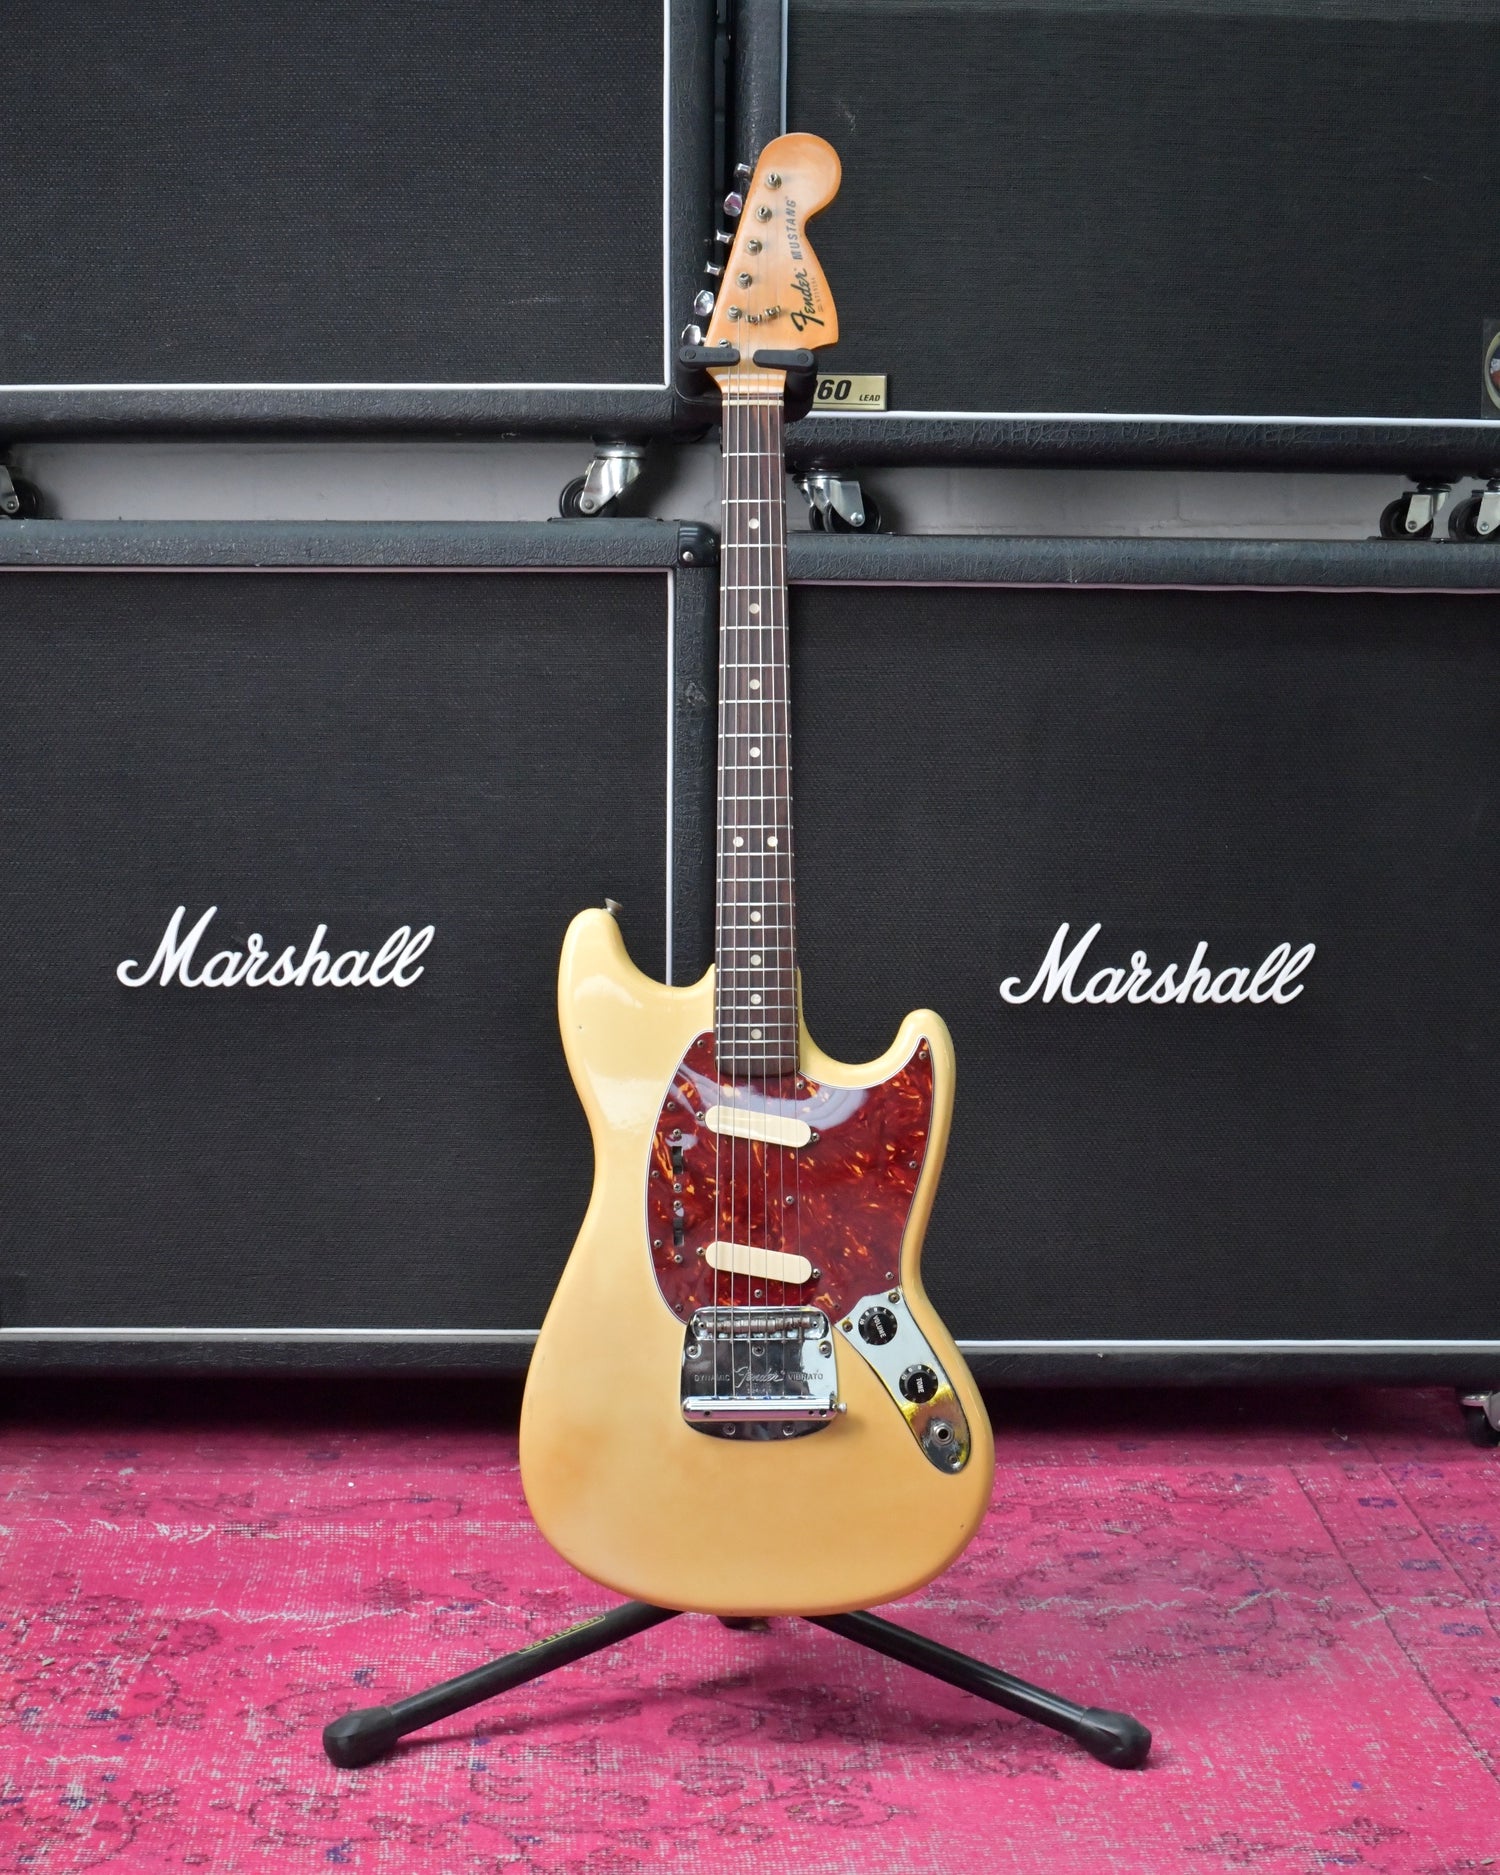 Fender Mustang Vintage 1977 USA Blonde